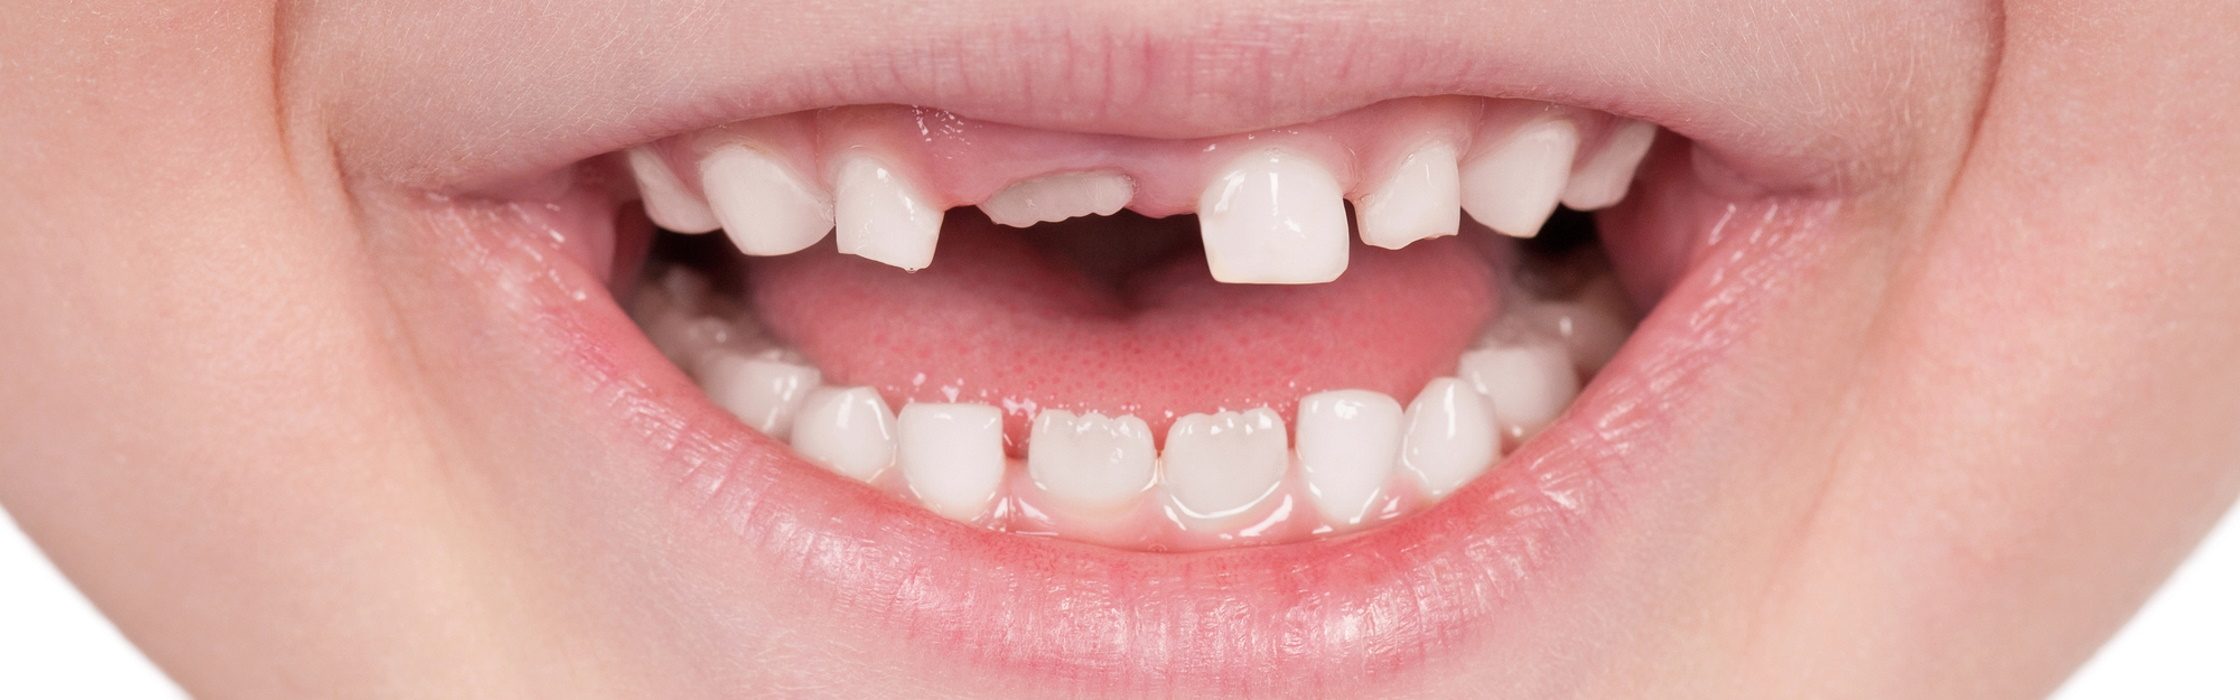 Zahn selber ziehen oder besser zum Zahnarzt gehen?